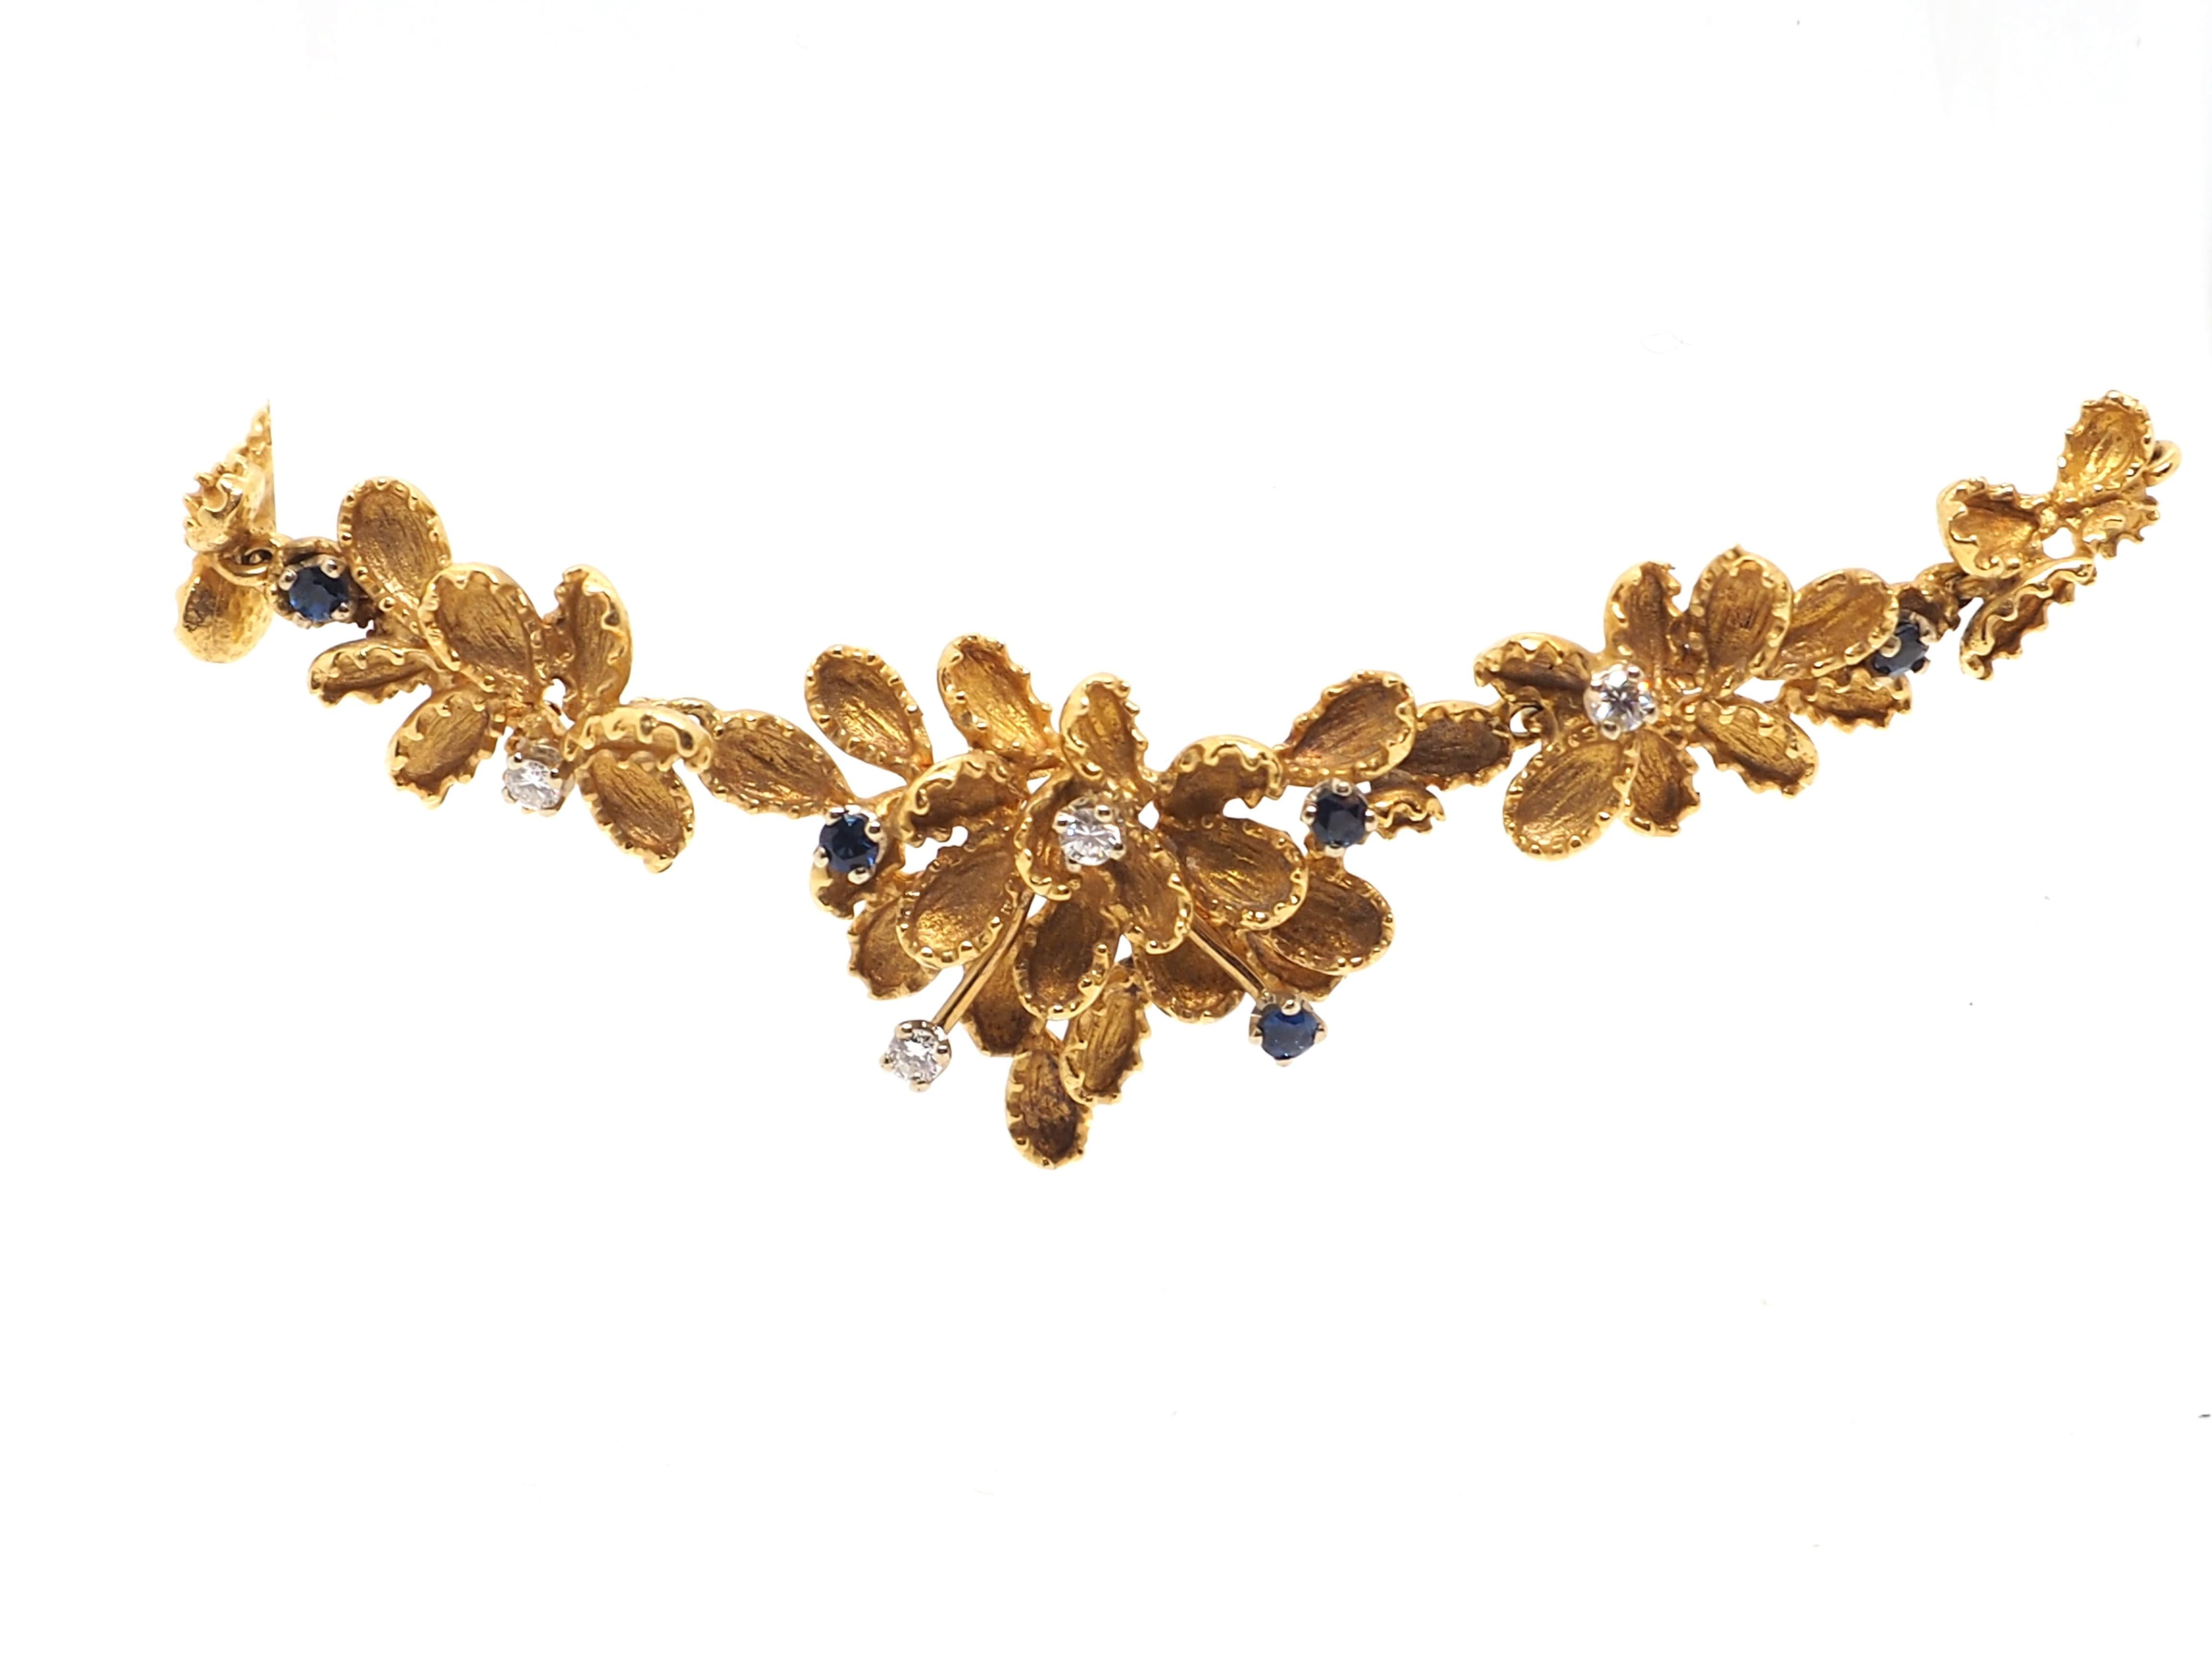 Diese exquisite florale Halskette mit Rubinen und Diamanten ist aus 18 Karat Gelbgold gefertigt und strahlt einen warmen und luxuriösen Glanz aus. Das Herzstück dieses atemberaubenden Schmuckstücks ist eine Reihe fein gearbeiteter Blumen, deren